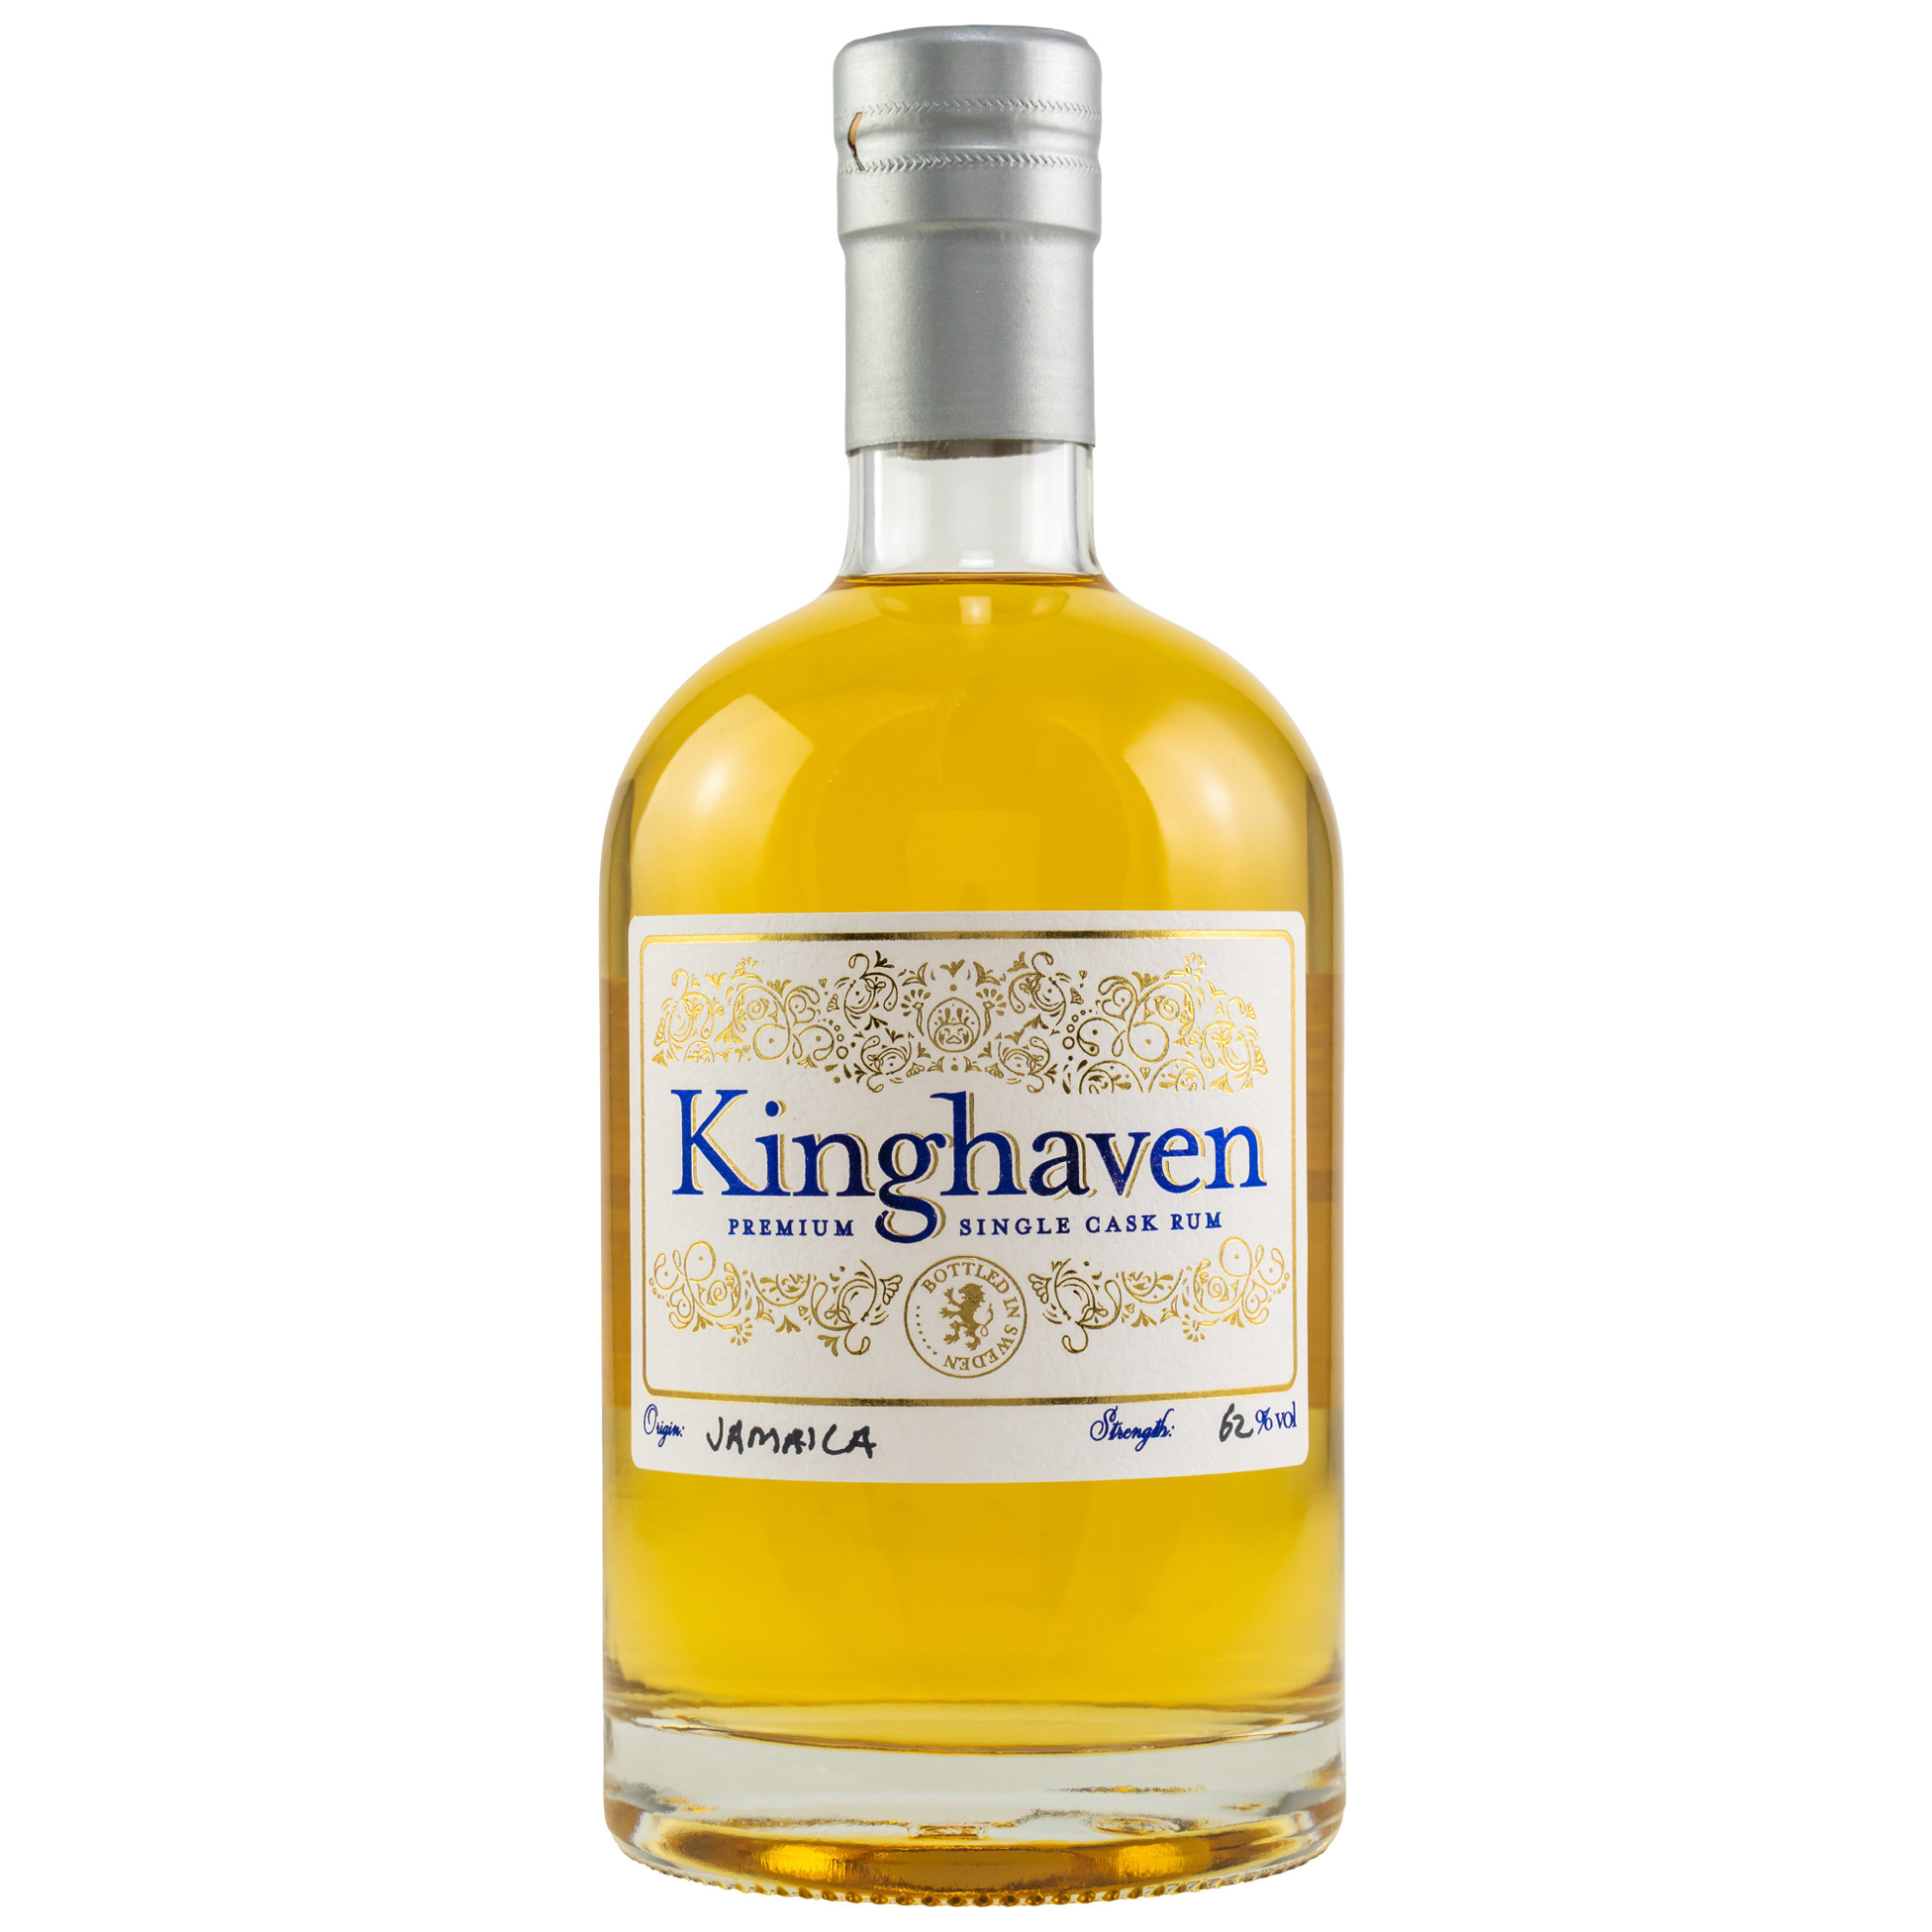 Smögen Kinghaven CH 2007/2021 Jamaica Rum 62% 0,7l